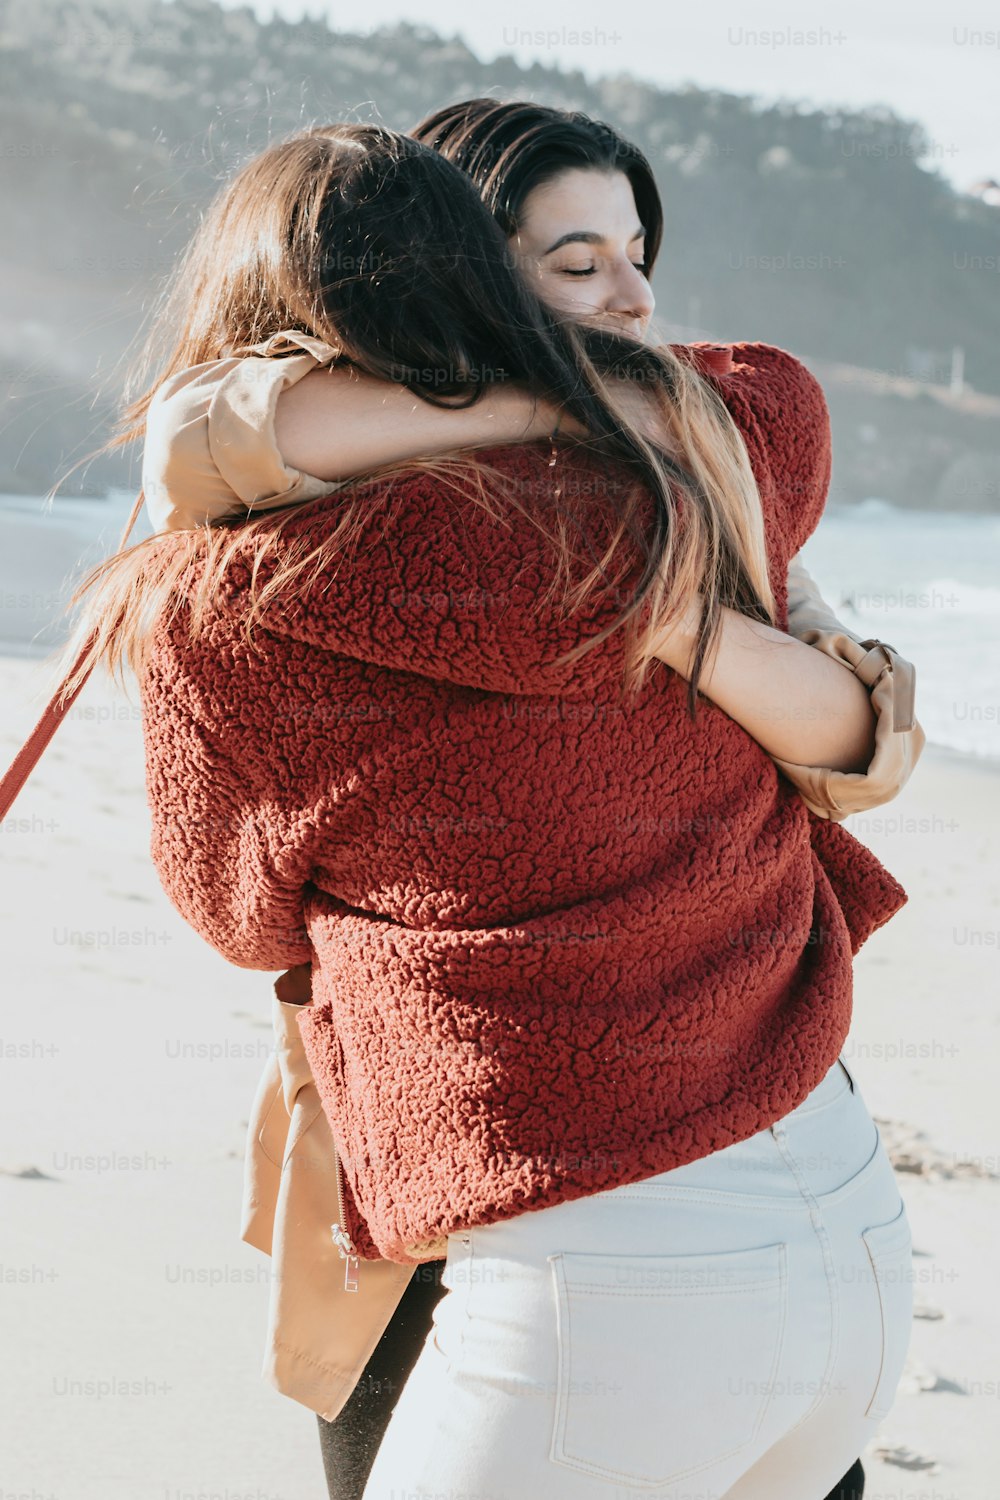 Una mujer abraza a otra mujer en la playa